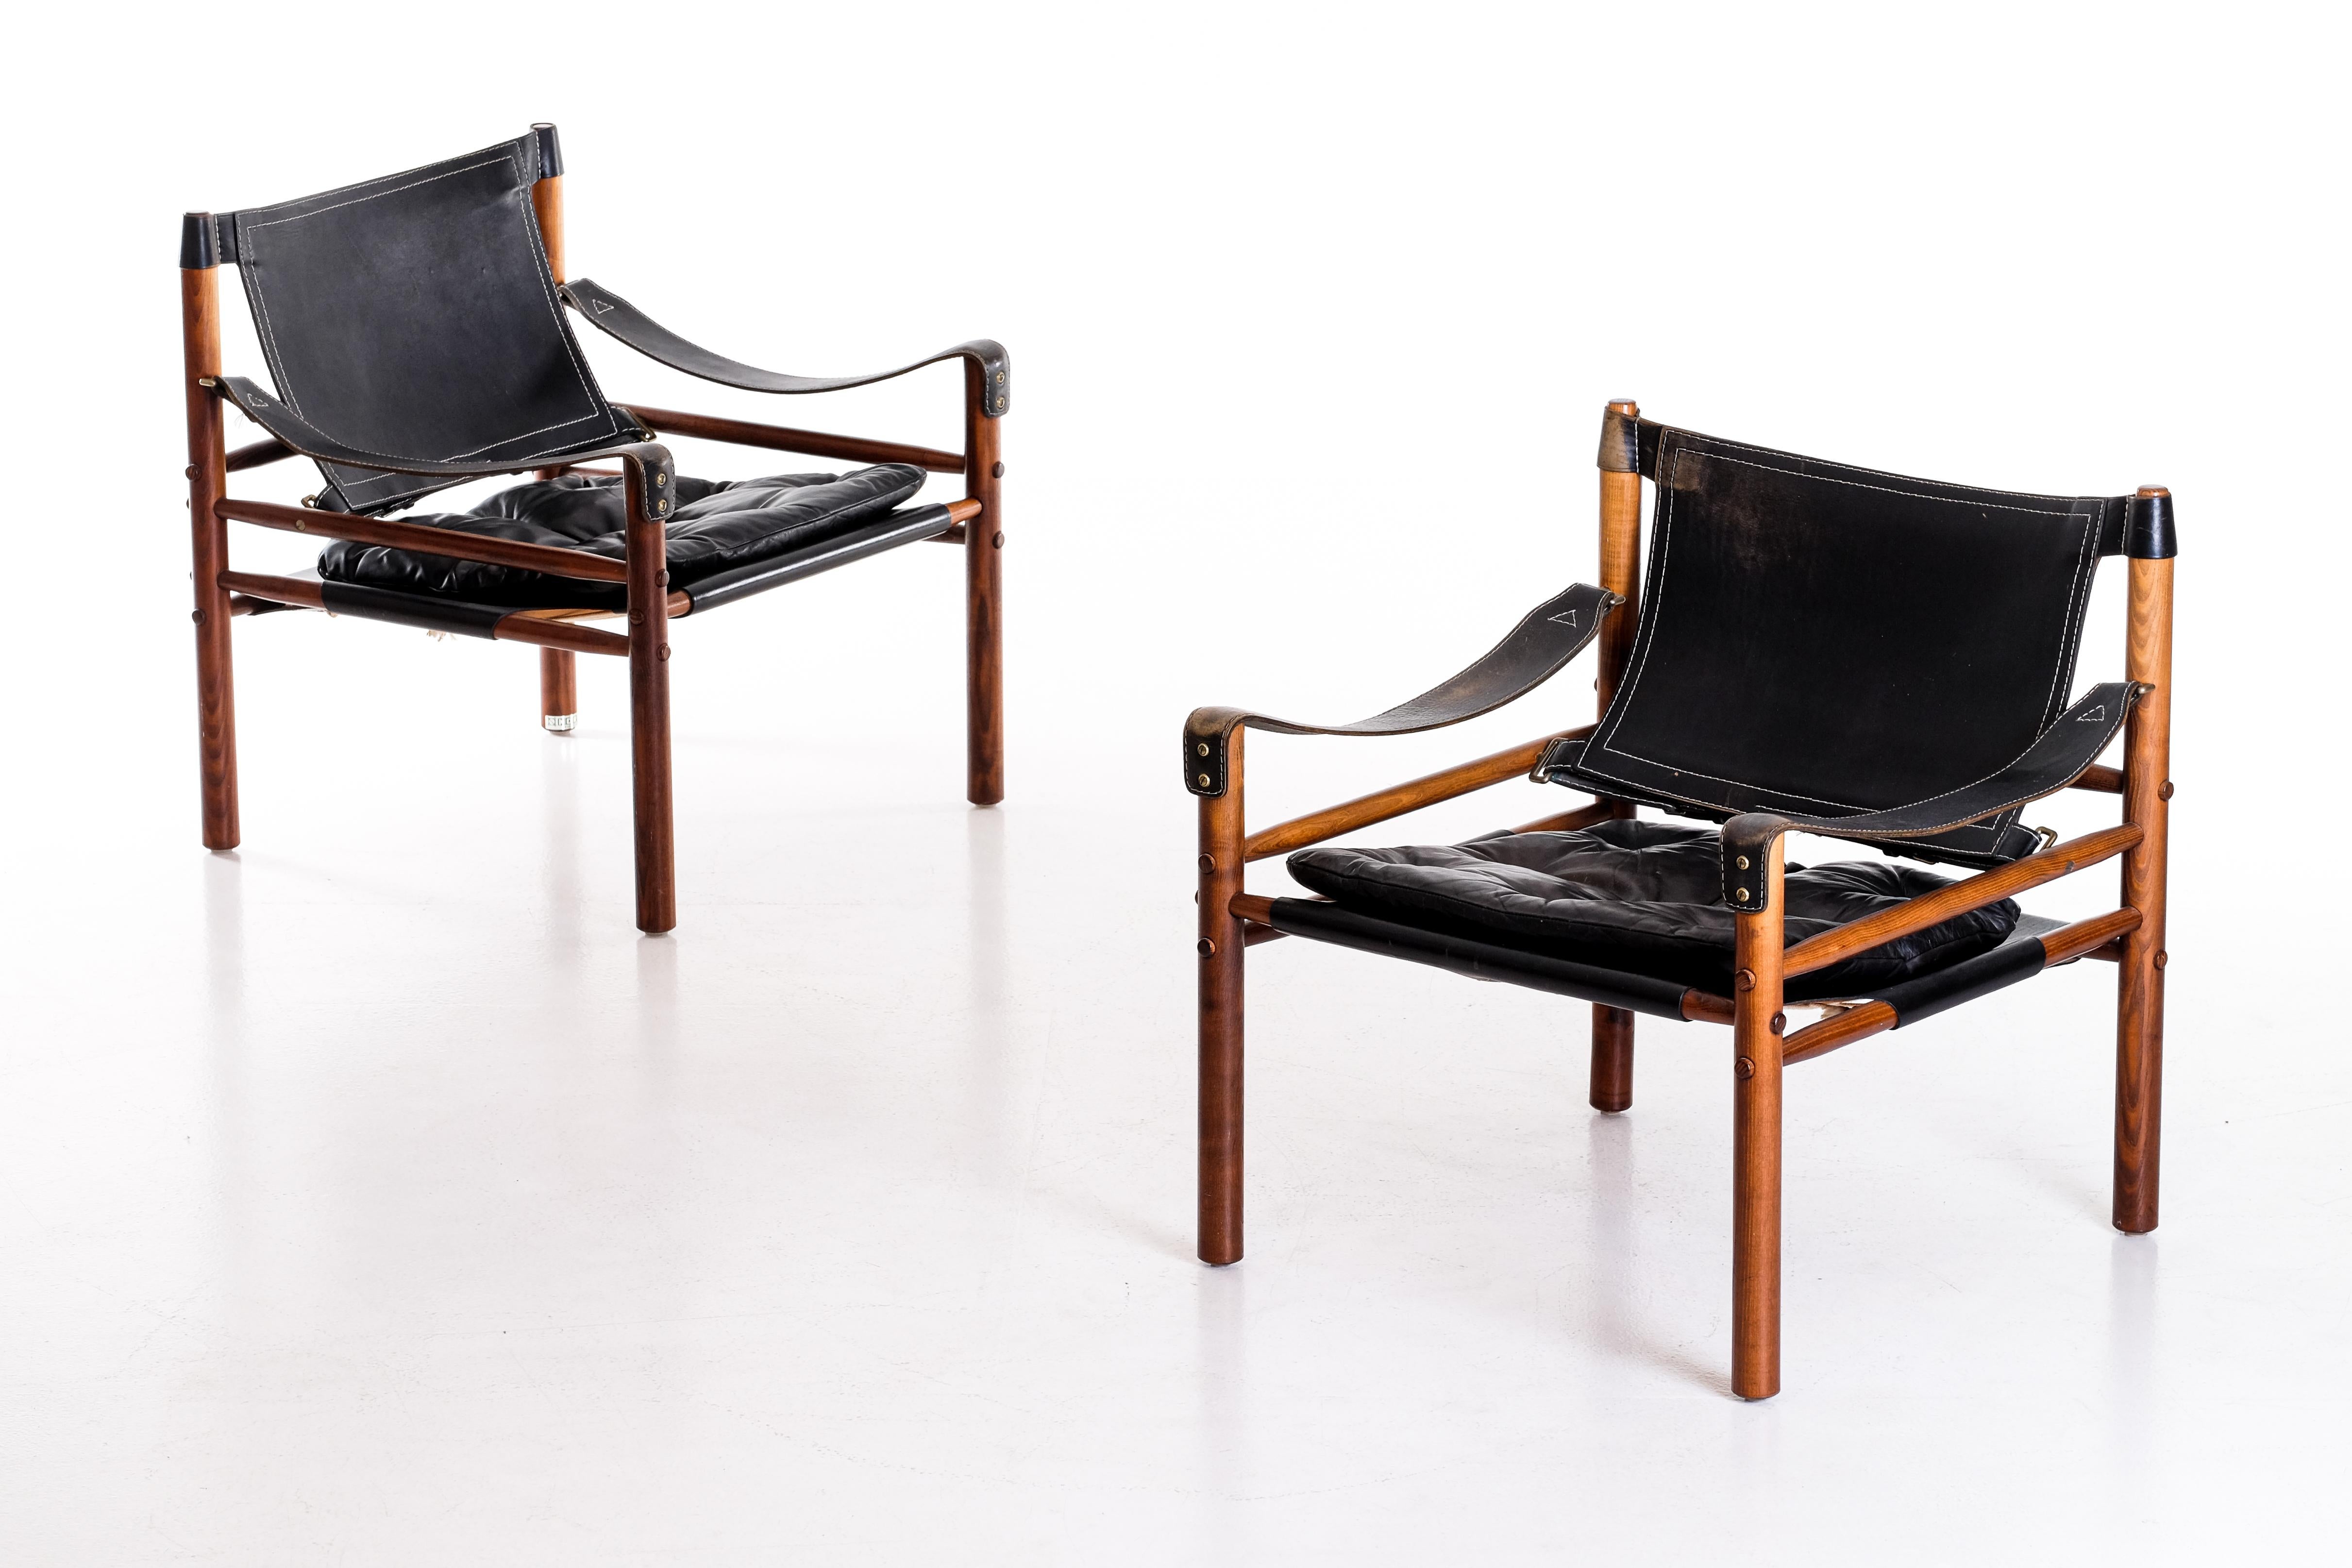 Paire de chaises safari modèle Sirocco en bon état avec cuir noir d'origine.
Conçu par Arne Norell, produit par Arne Norell AB à Aneby, Suède, années 1960.
Expédition mondiale par la porte d'entrée, livraison dans les 10 jours : 1000 €.




